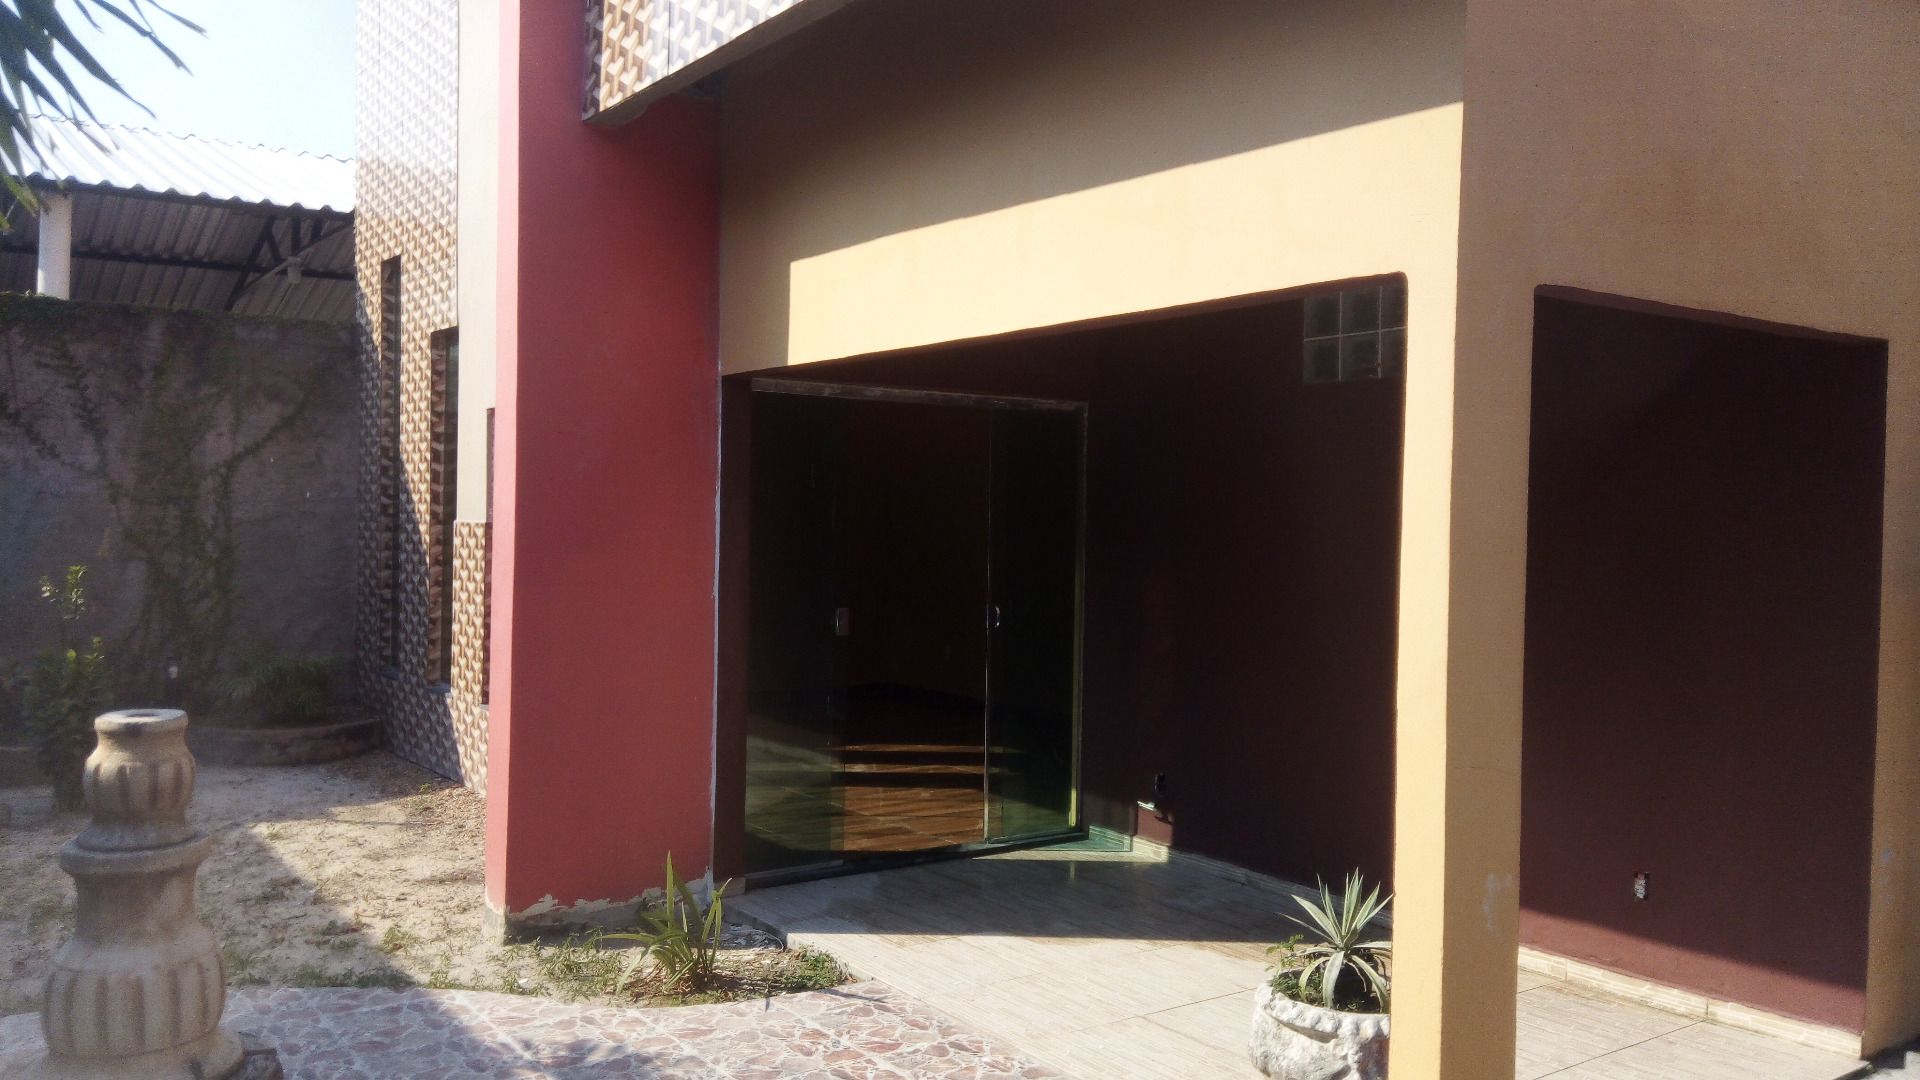 Casa com 4 dormitórios à venda, 450 m² por RS 370.000,00 - DISTRITO - Manaus-AM